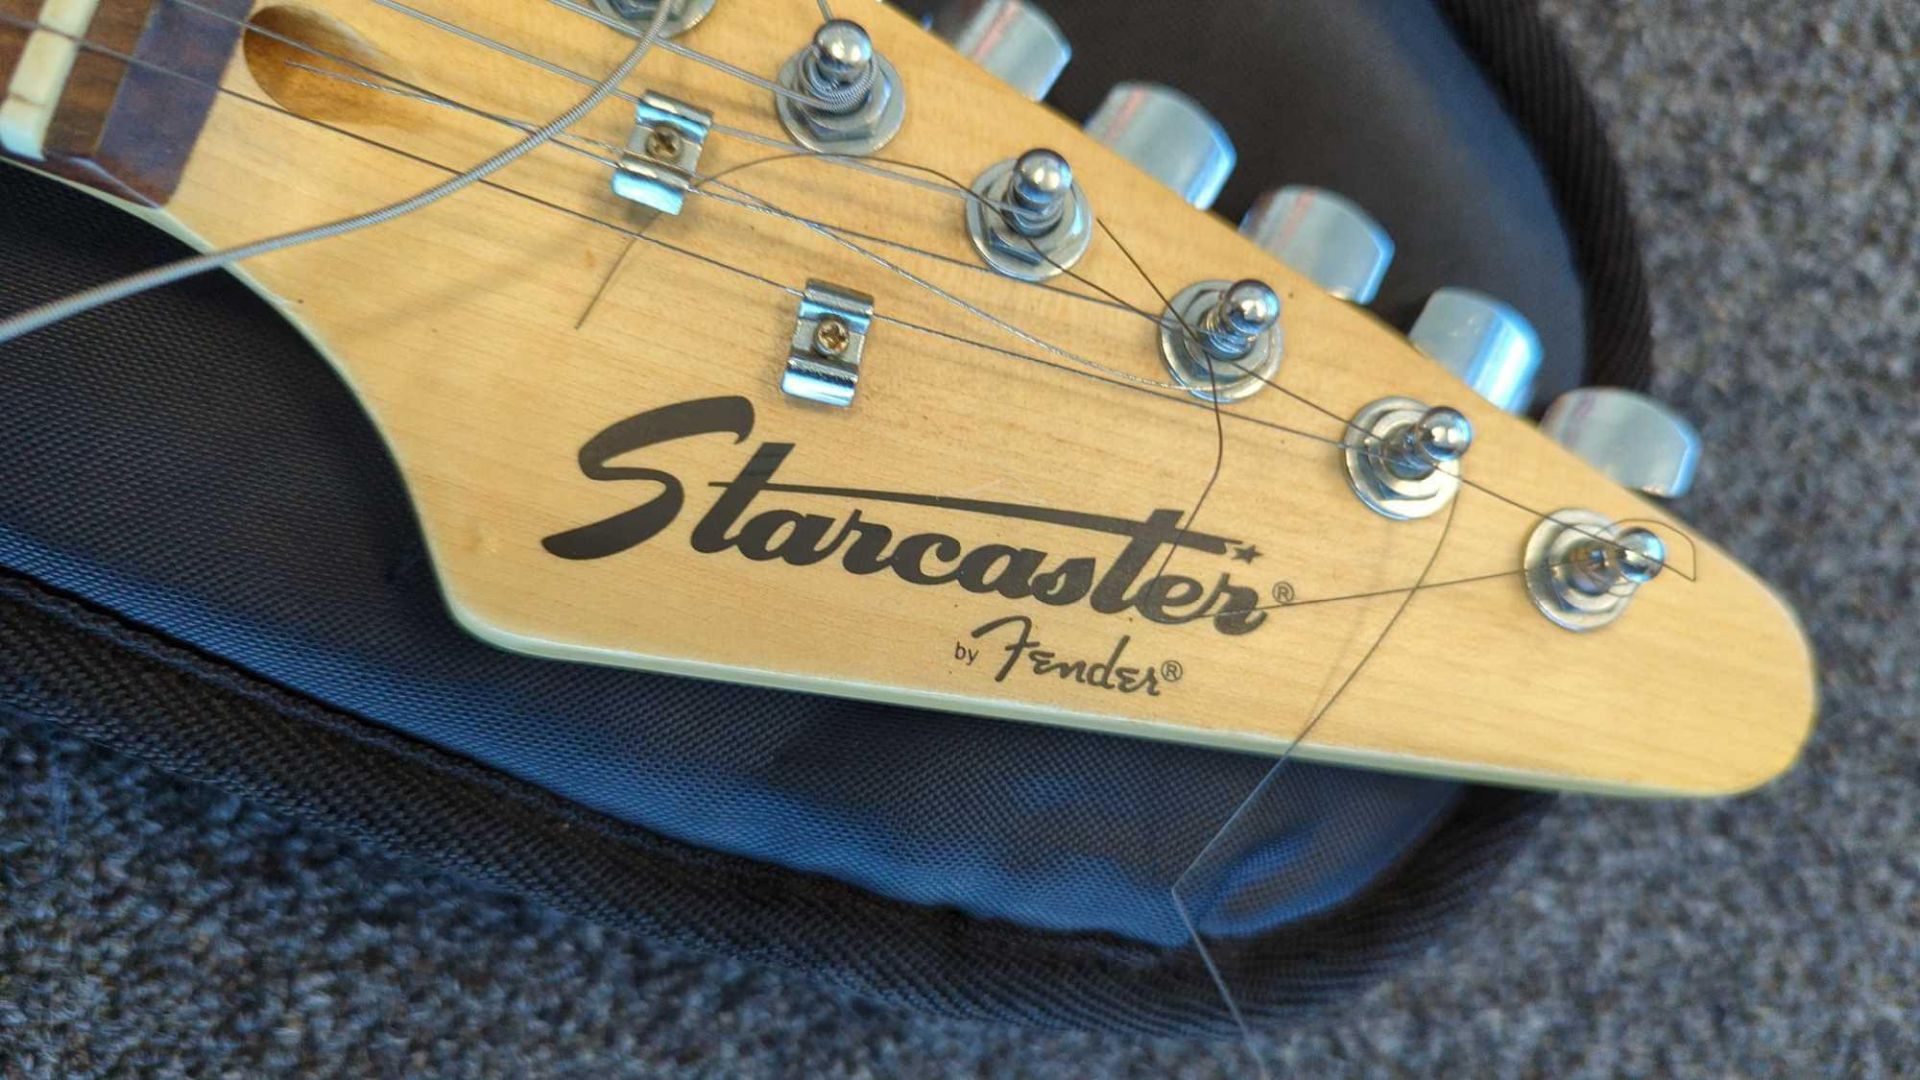 Fender Starcastrer "strat" Guitar - Image 4 of 8